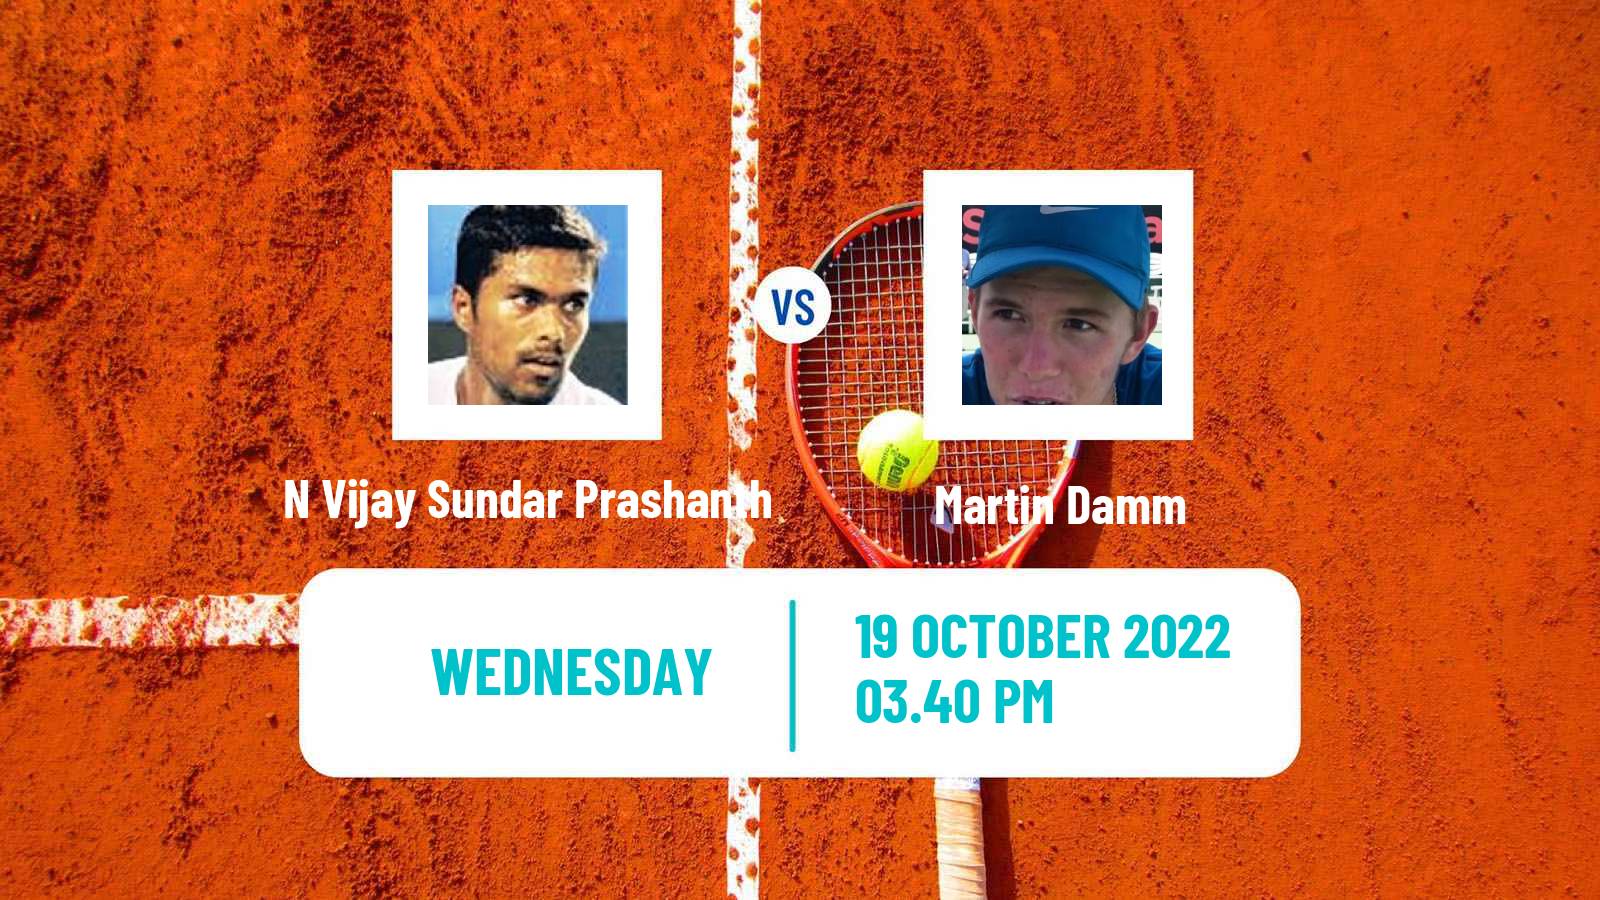 Tennis ITF Tournaments N Vijay Sundar Prashanth - Martin Damm